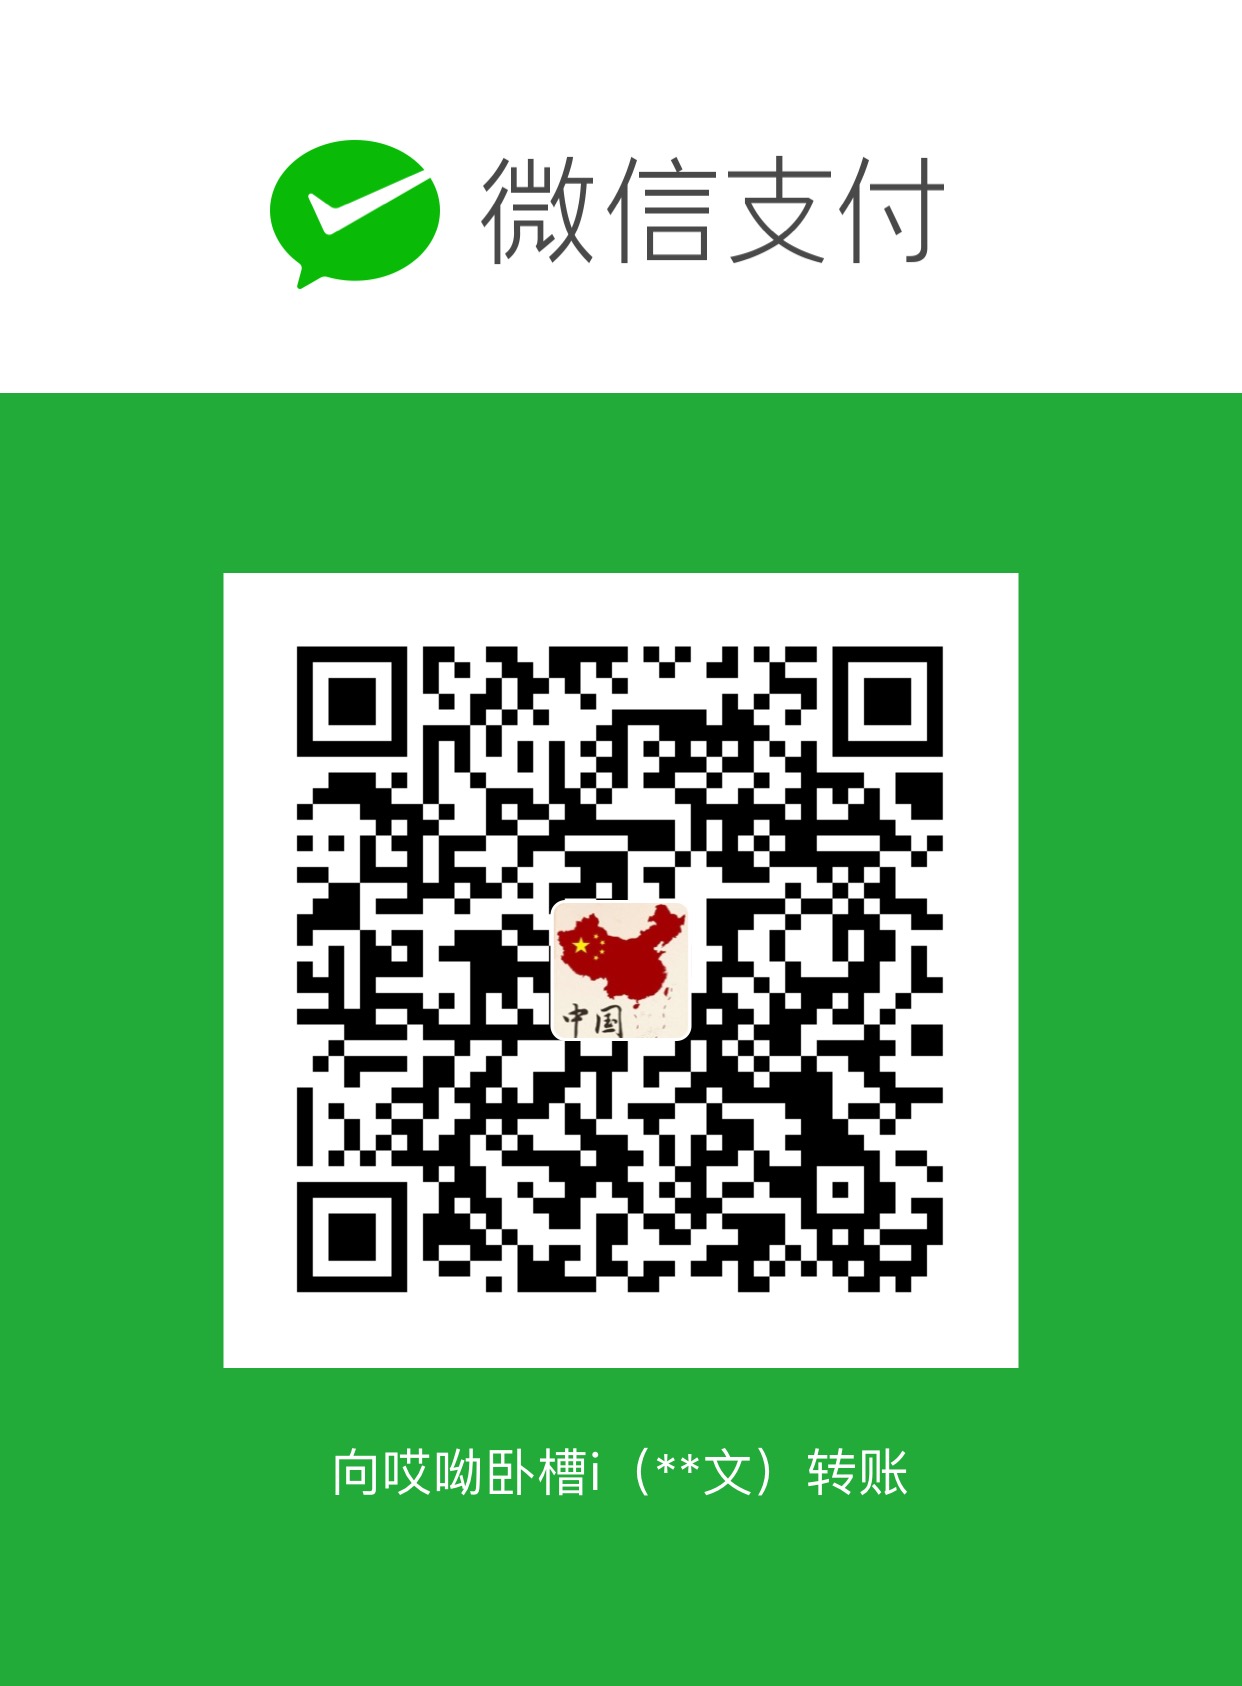 孟令文 WeChat Pay